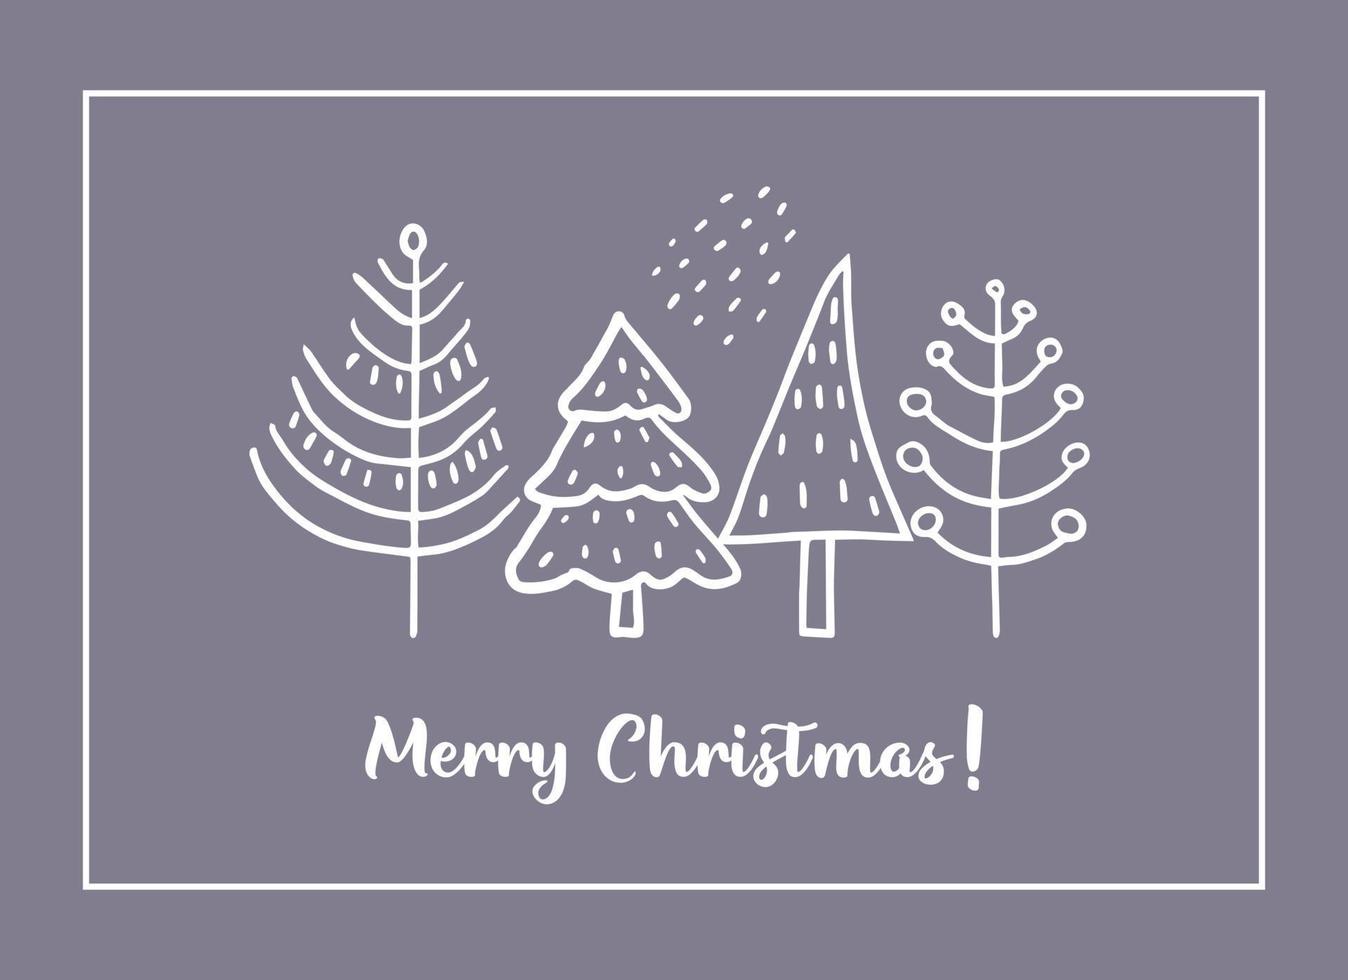 weihnachtsgrußkarten aus handgezeichneten stilisierten weihnachtsbäumen. Gekritzelelemente im skandinavischen Stil. vektor